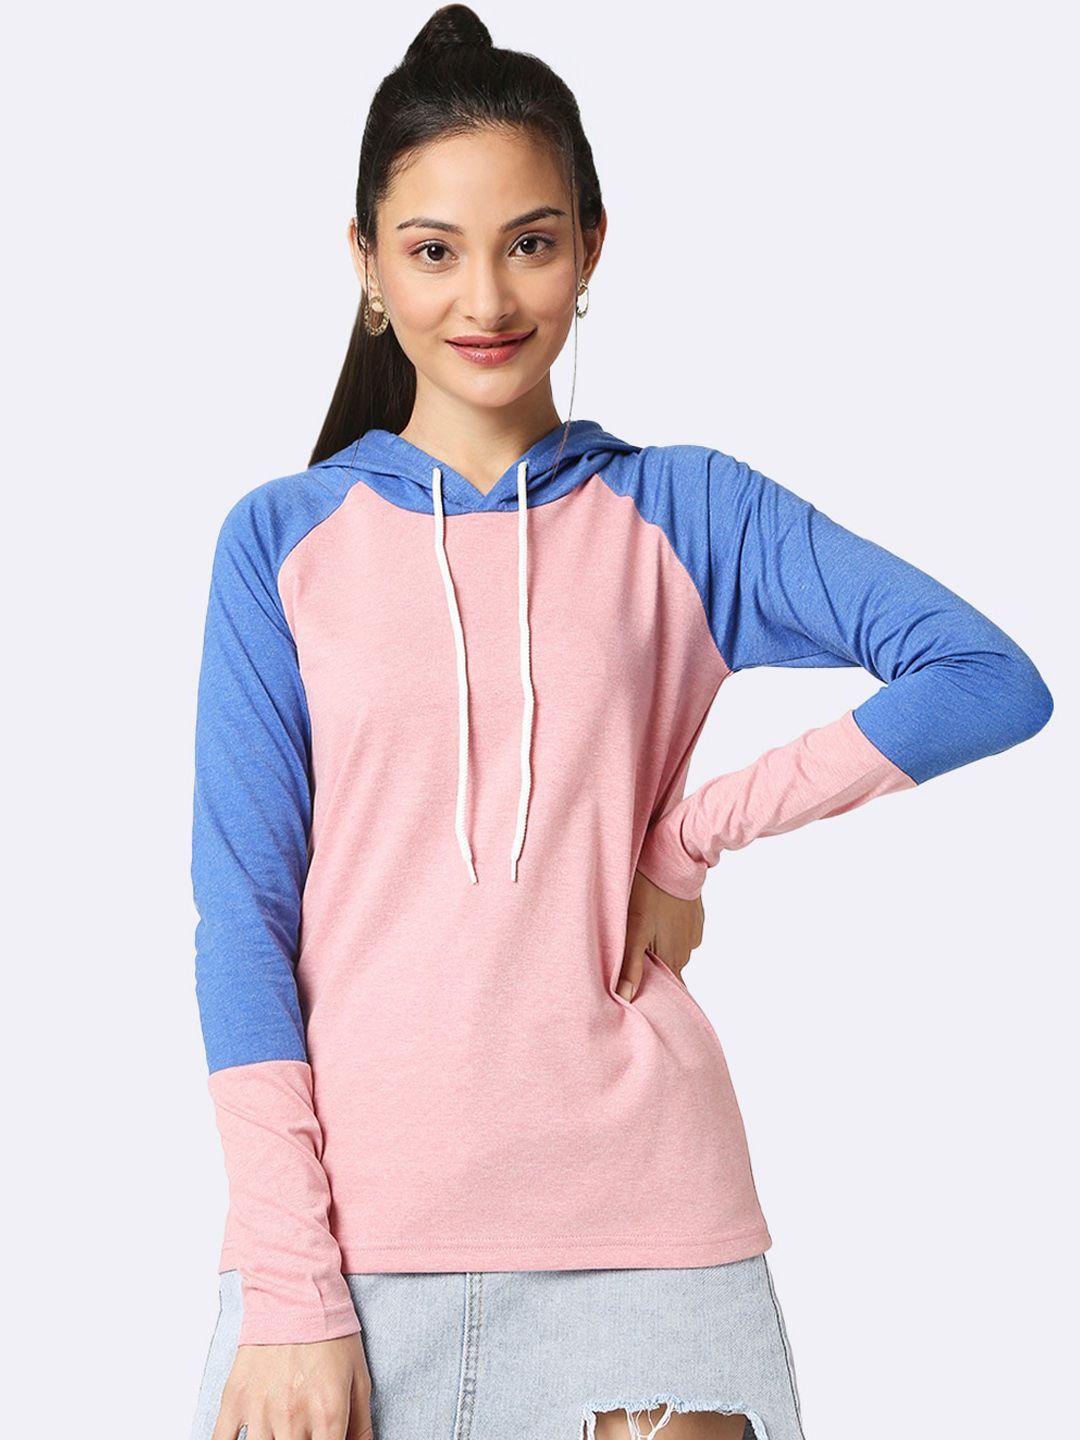 bewakoof women blue & white colourblocked sweatshirt